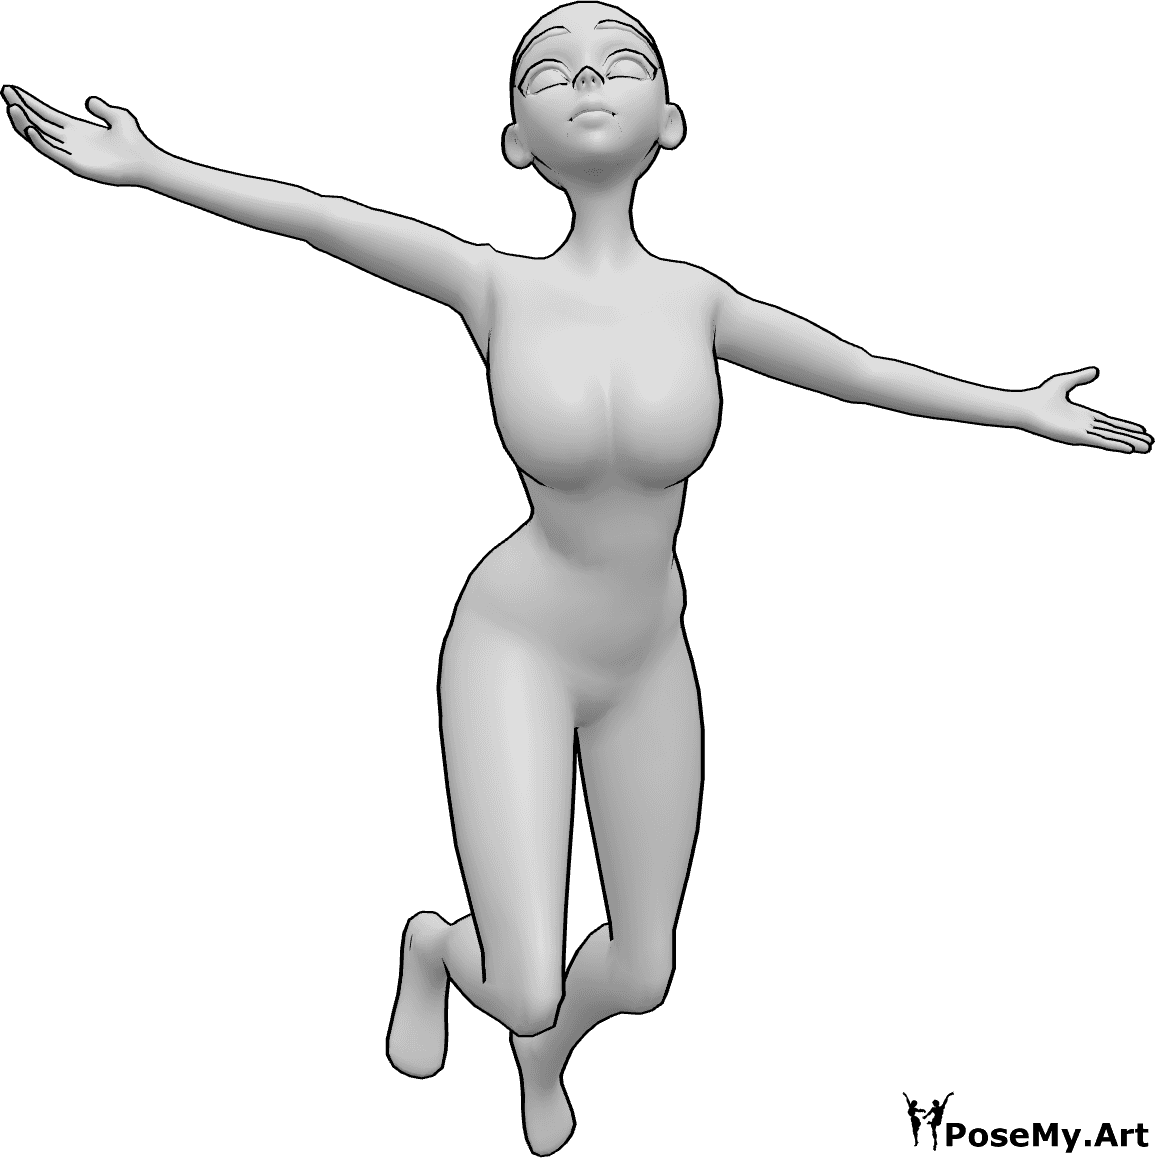 Referencia de poses- Anime feliz saltando pose - Mujer anime feliz está saltando y mirando al cielo pose